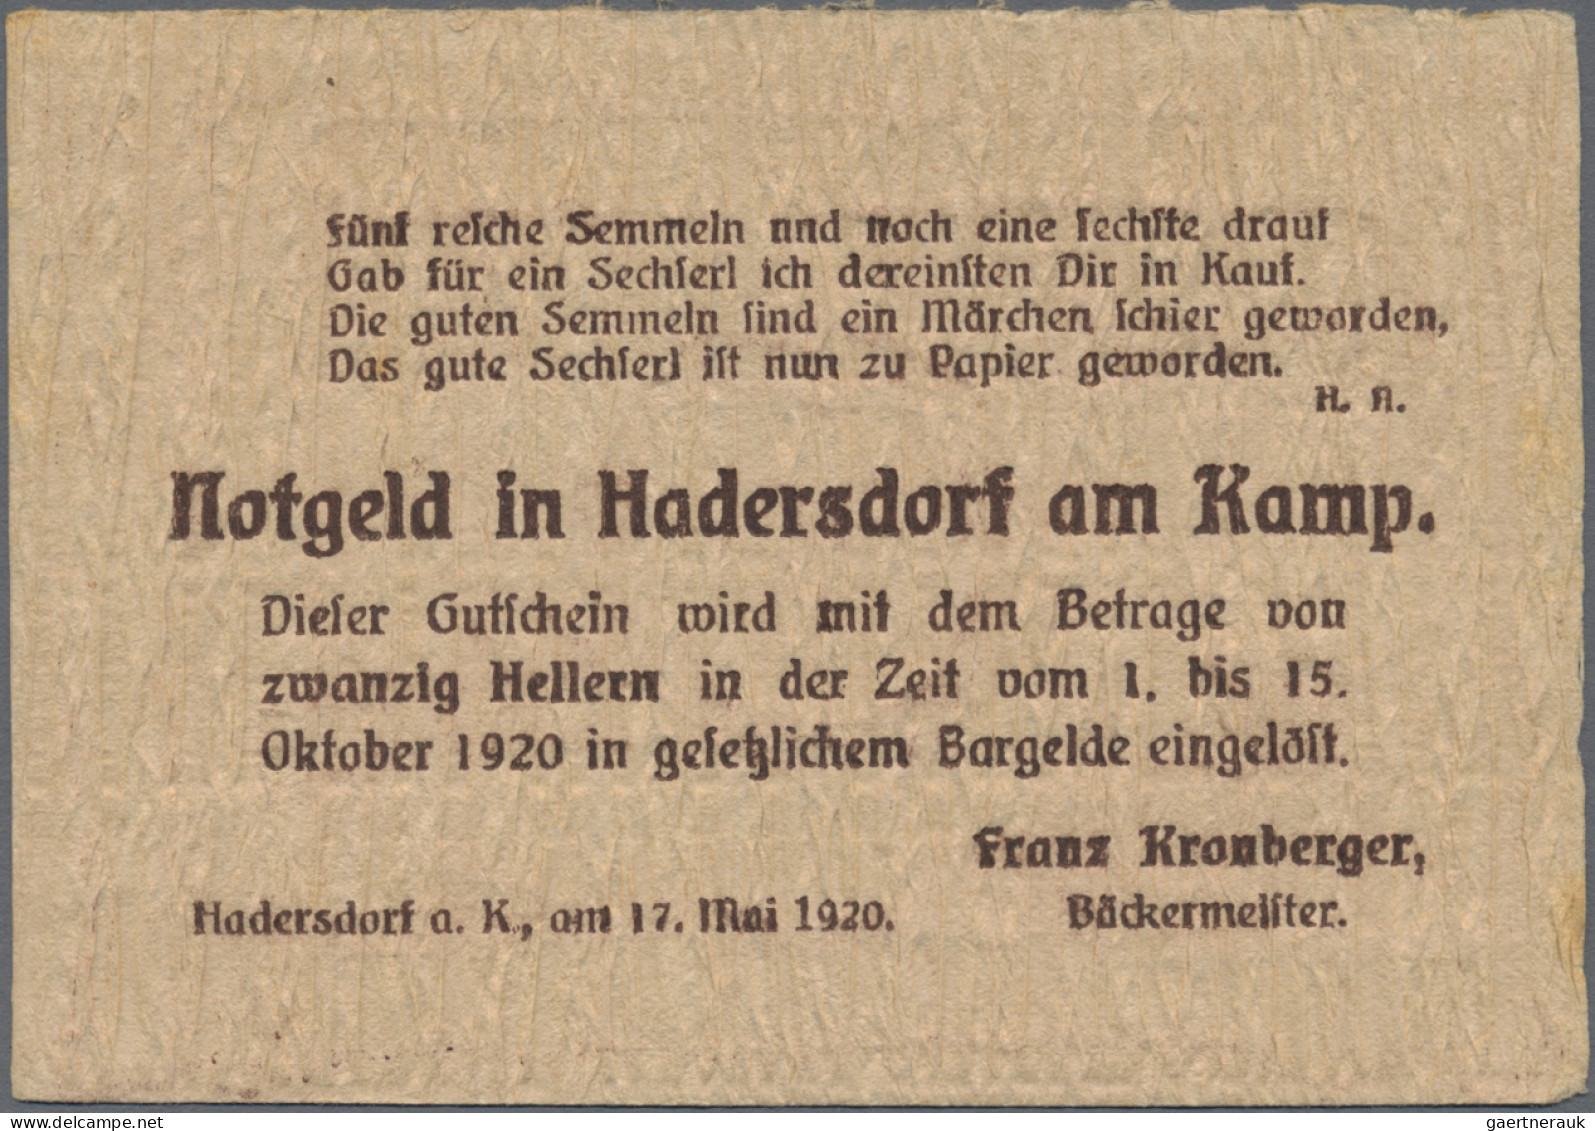 Austria: Hadersdorf Am Kamp, Franz Kronberger, 10, 20, 50 H., 17.5.1920, 10 H. W - Oesterreich